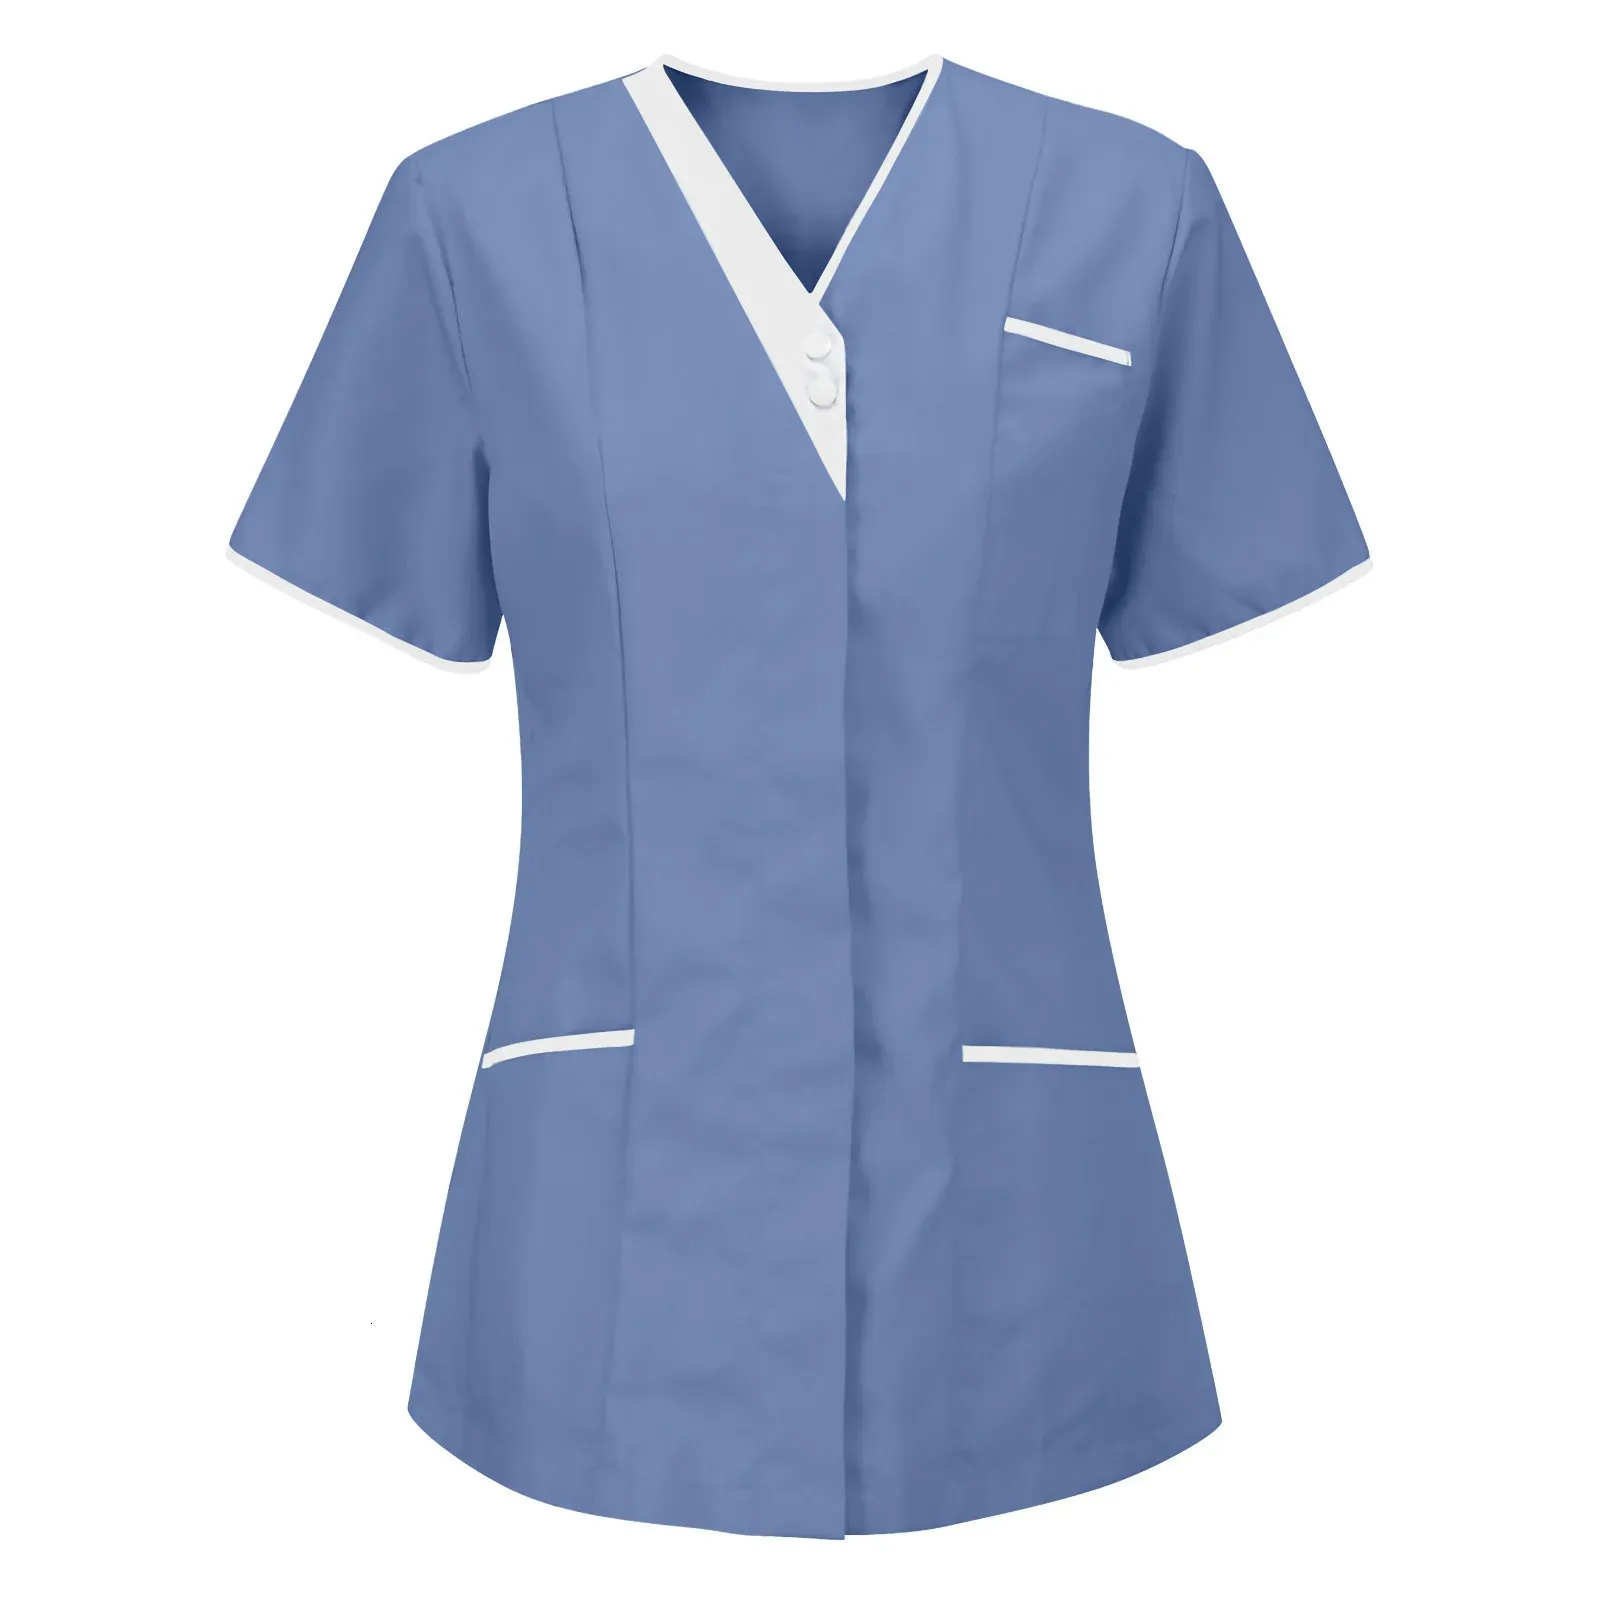 Nurse Uniform Scrubs tops Womens Short Short Pocket Olaster